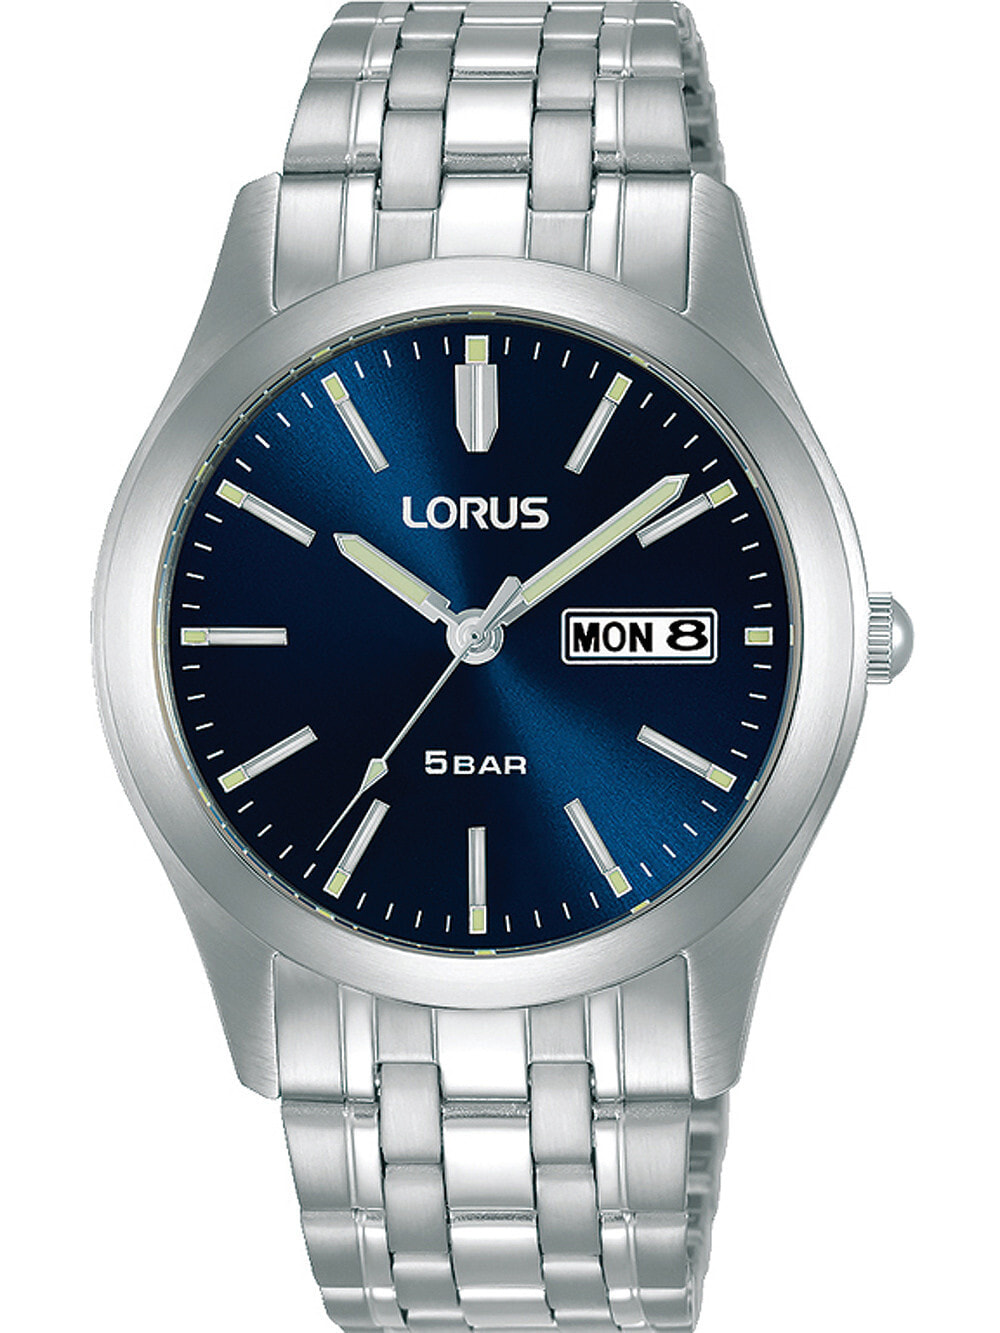 Мужские наручные часы с серебряным браслетом Lorus RXN69DX9 classic mens 38mm 5ATM